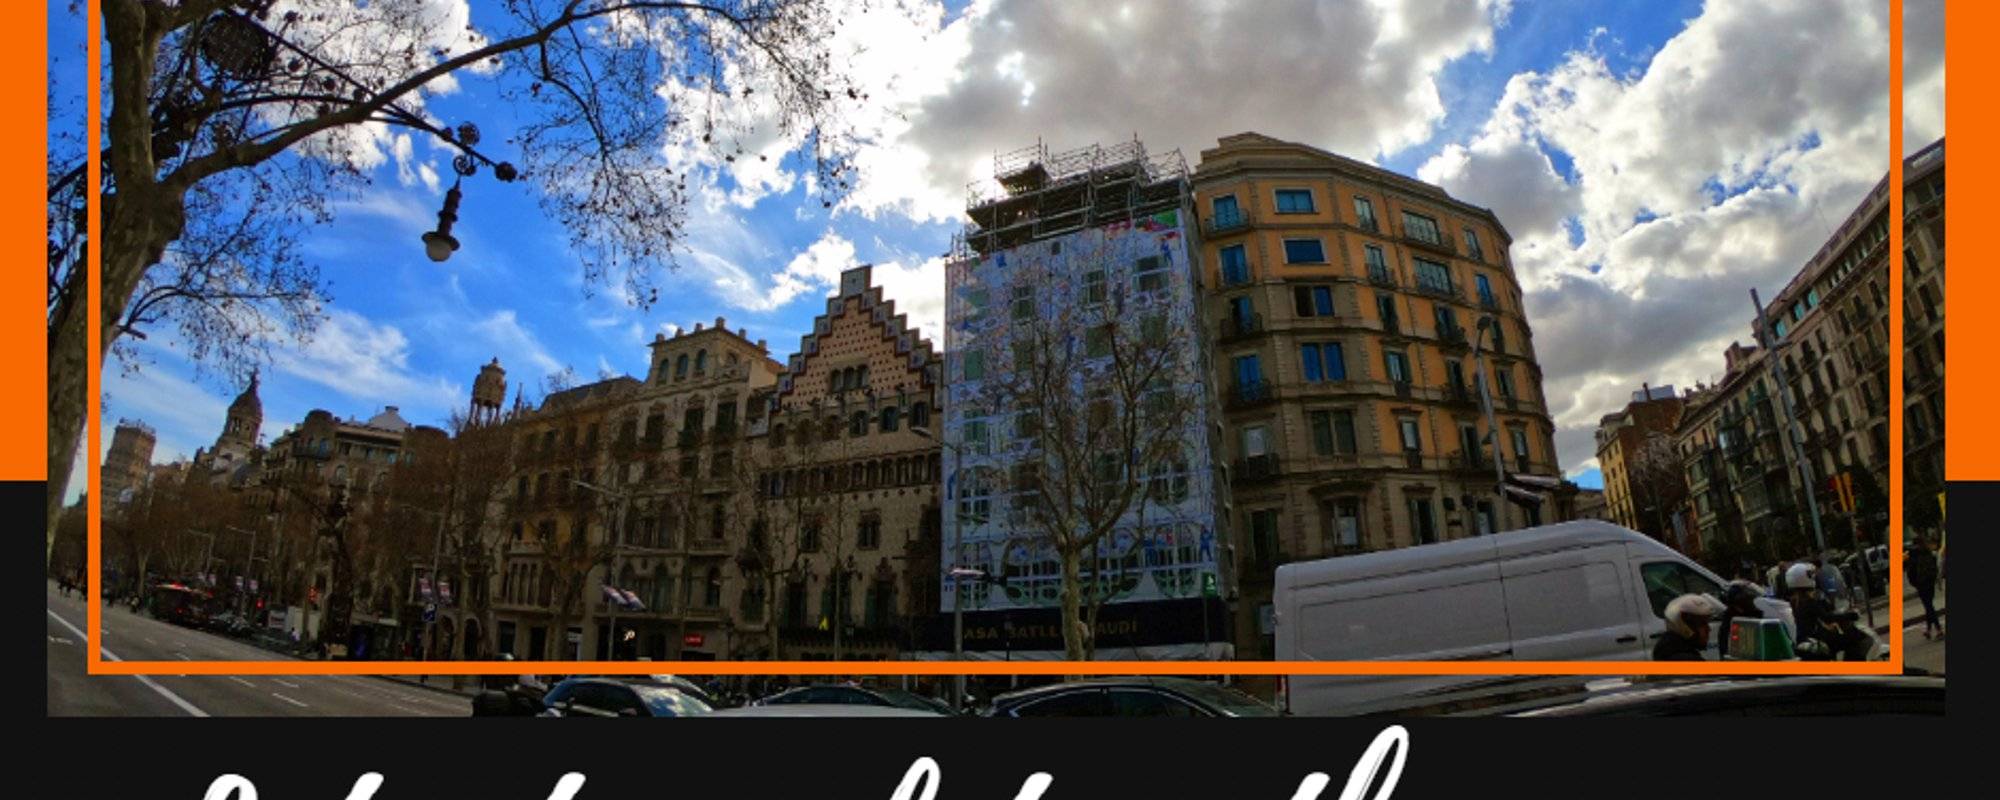 Let's travel together #116 - Casa Batlló (Barcelona Tour)